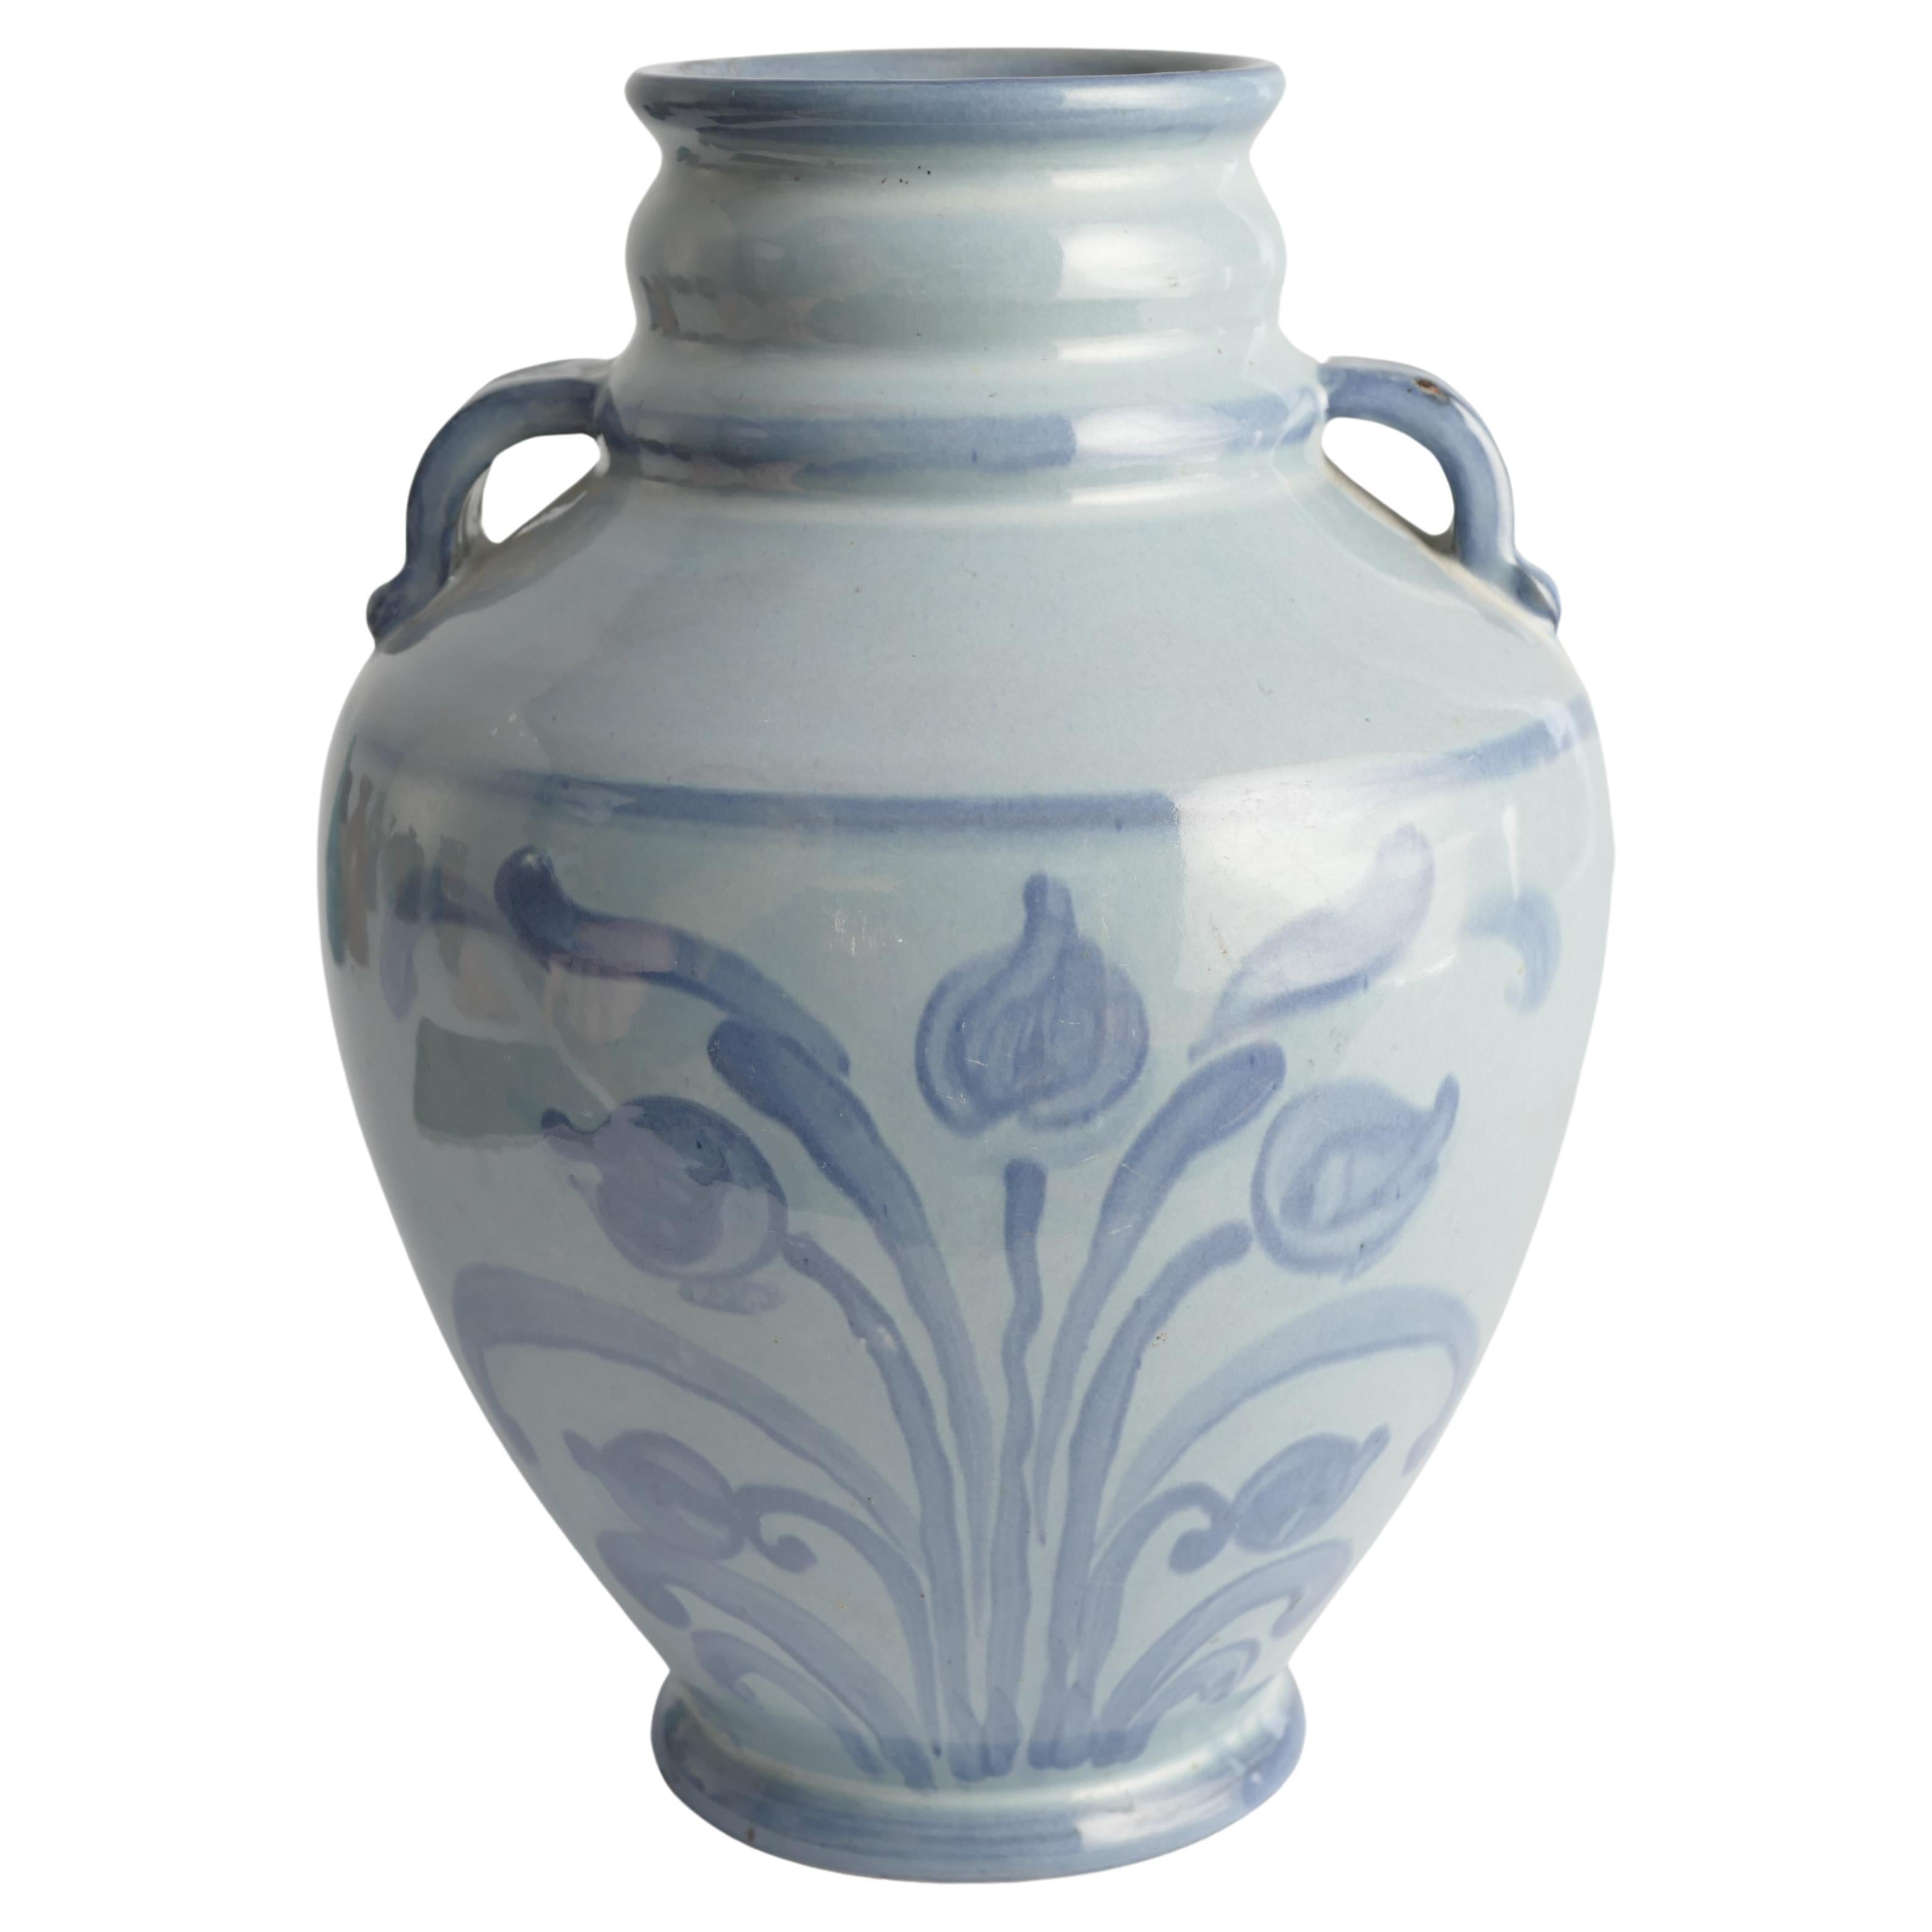 Un superbe vase art nouveau à motif floral bleu français avec poignées, réalisé par Upsala Ekeby, Suède, dans les années 1920. Le motif floral est peint à main levée sur deux côtés du vase.

Peint sur le fond avec 